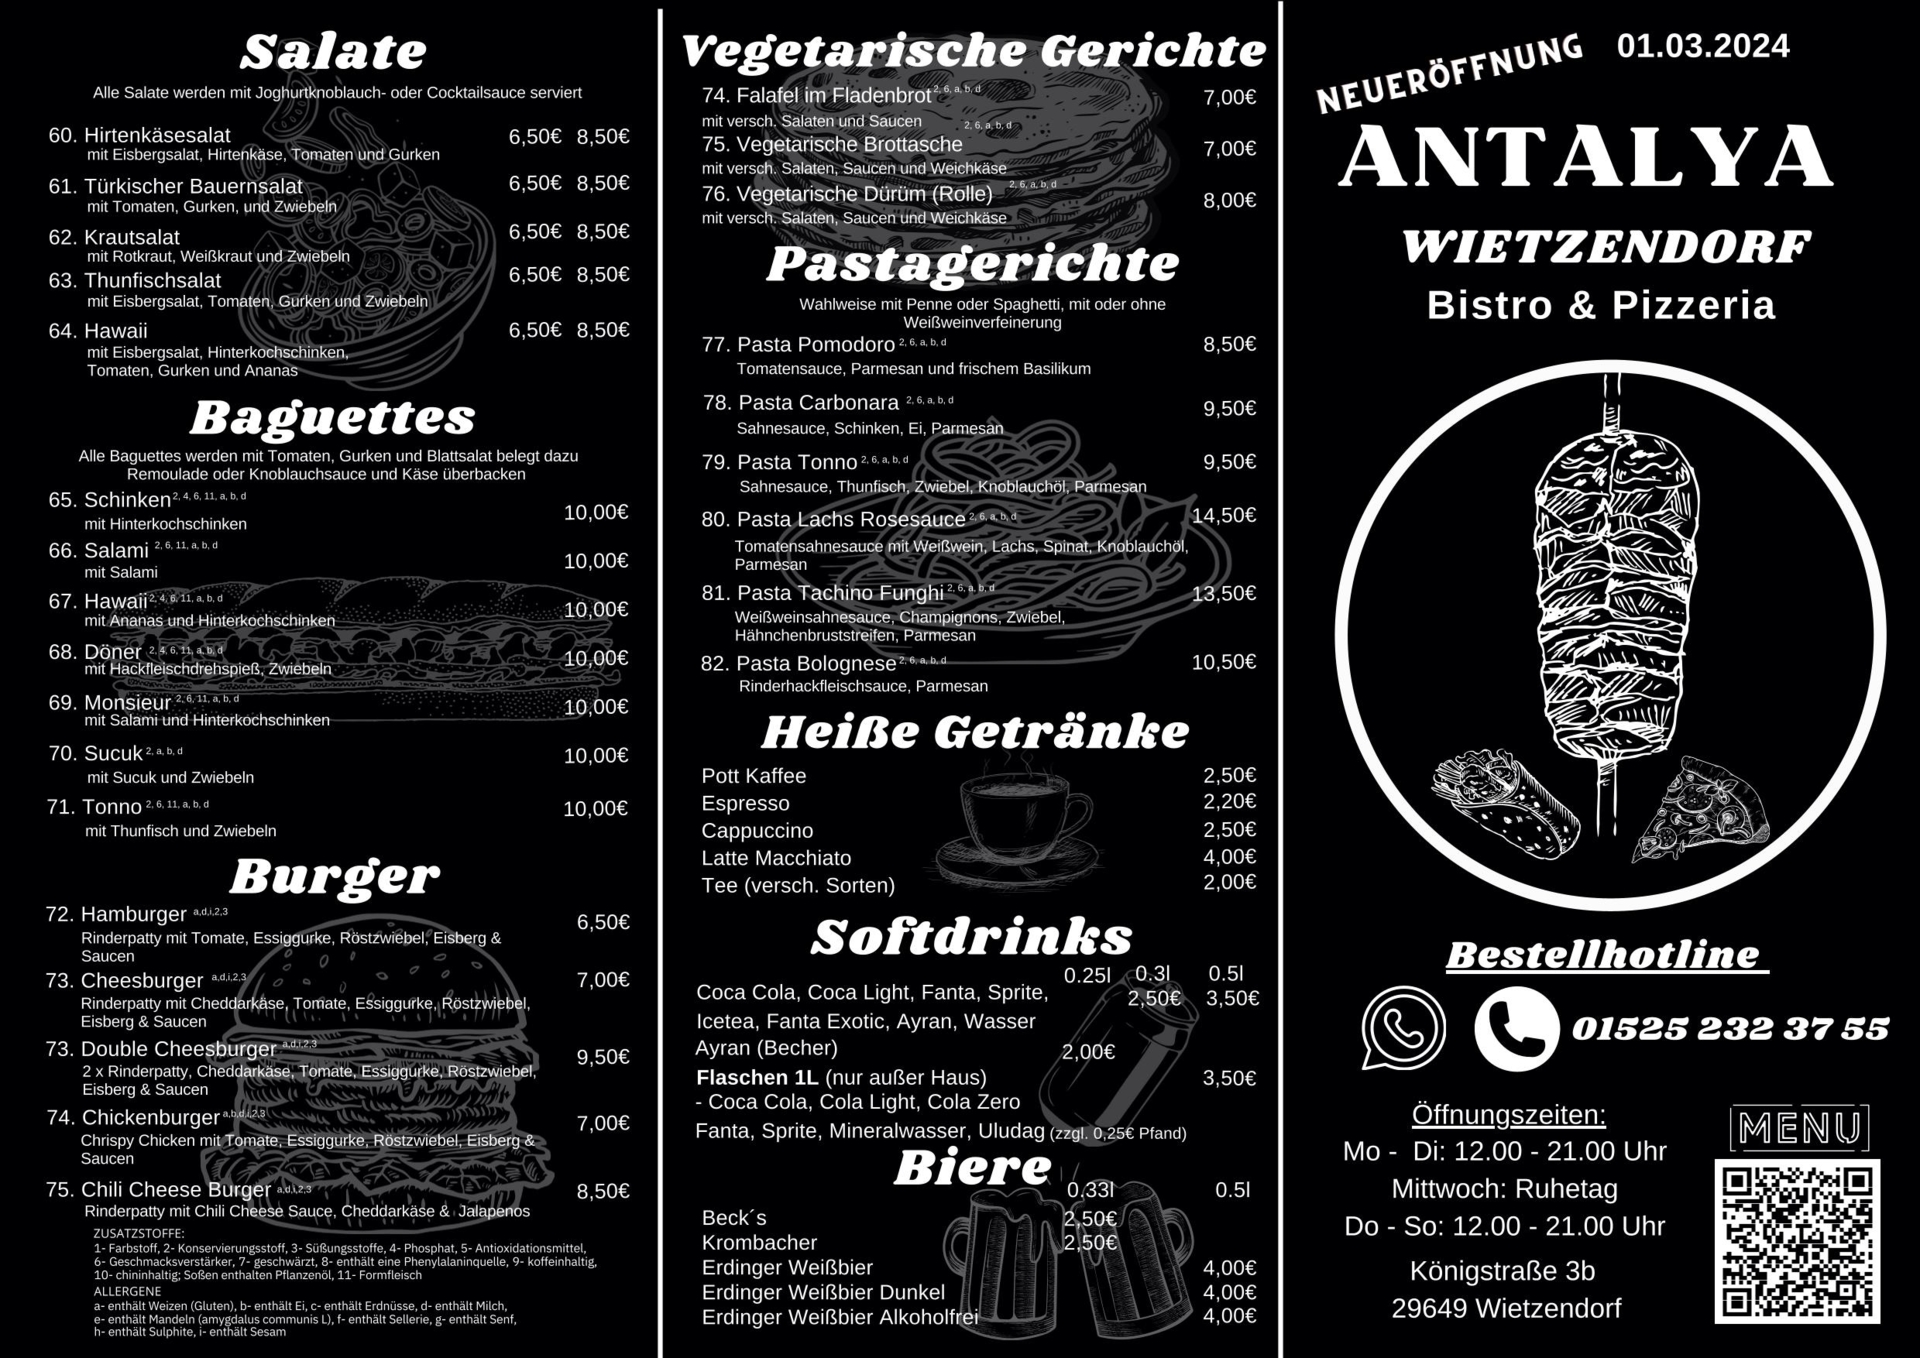 Antalya Wietzendorf Bistro & Pizzeria